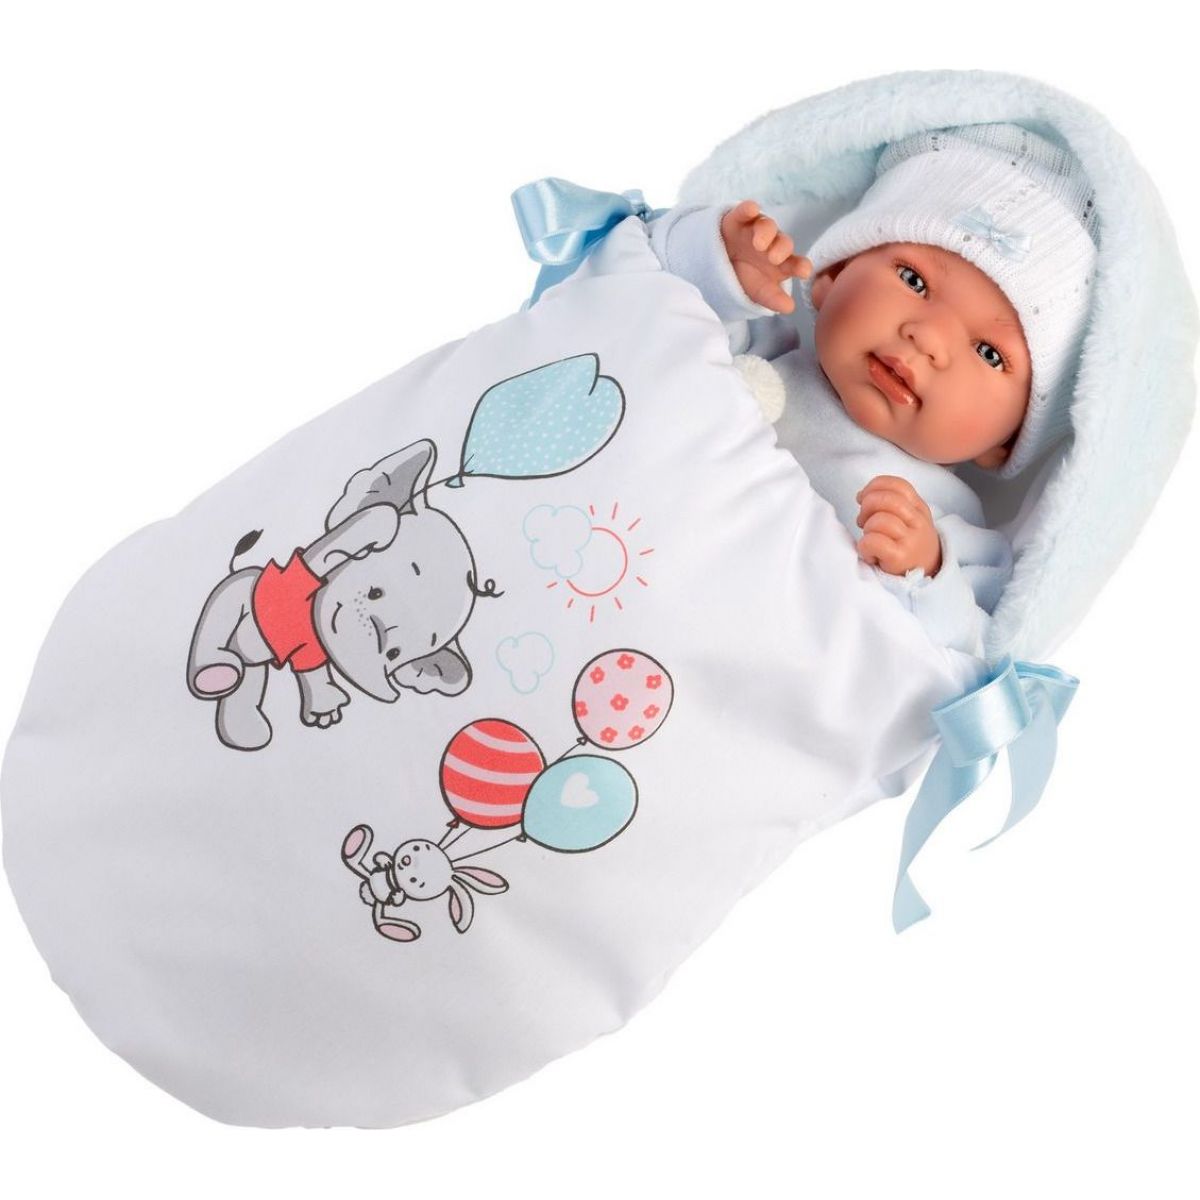 Llorens 84451 New born realistická panenka miminko se zvuky a měkkým látkový tělem 44 cm